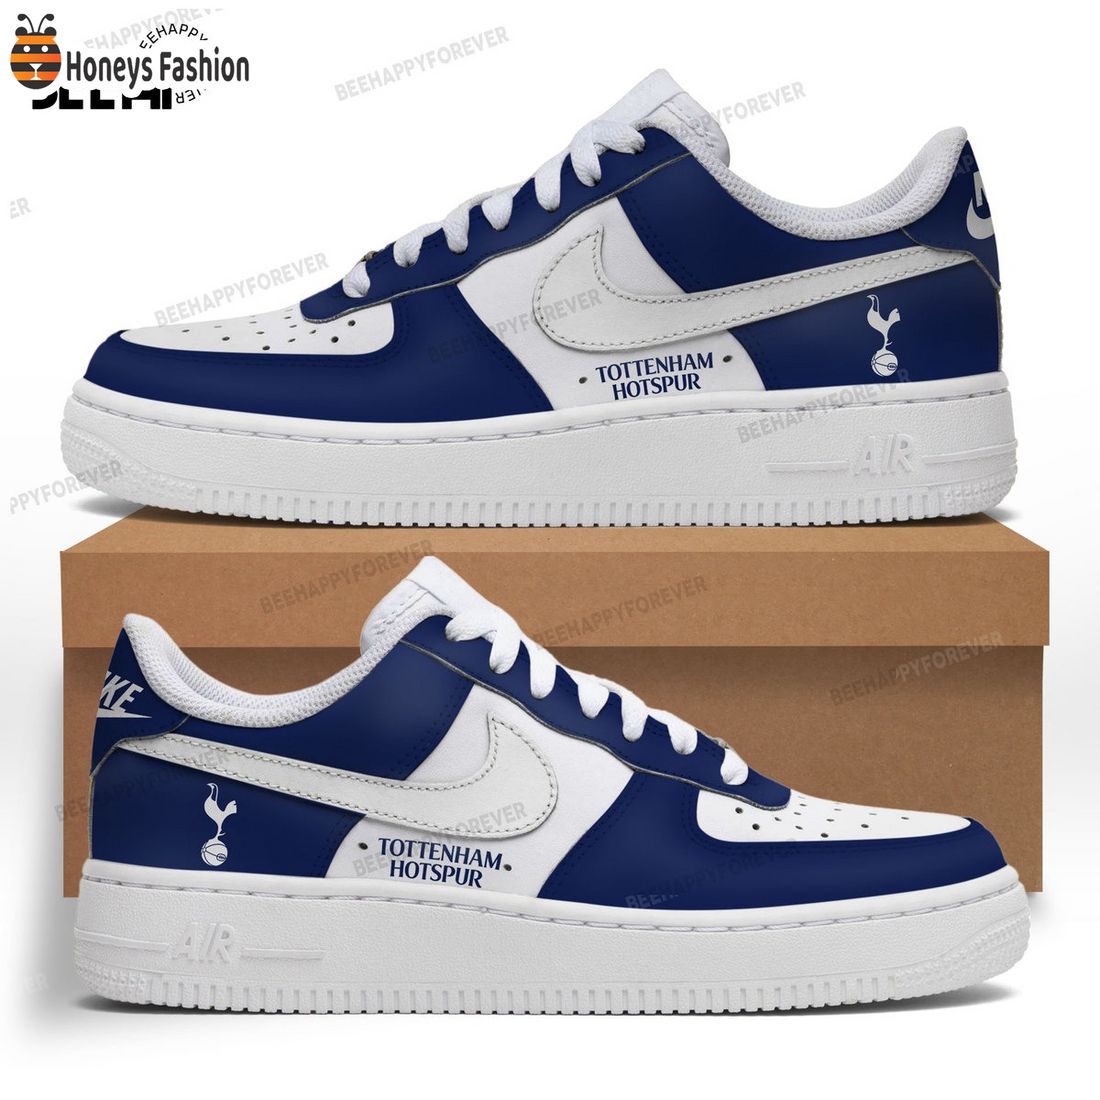 Tottenham Hotspur Air Force Custom Nike Air Force Sneaker